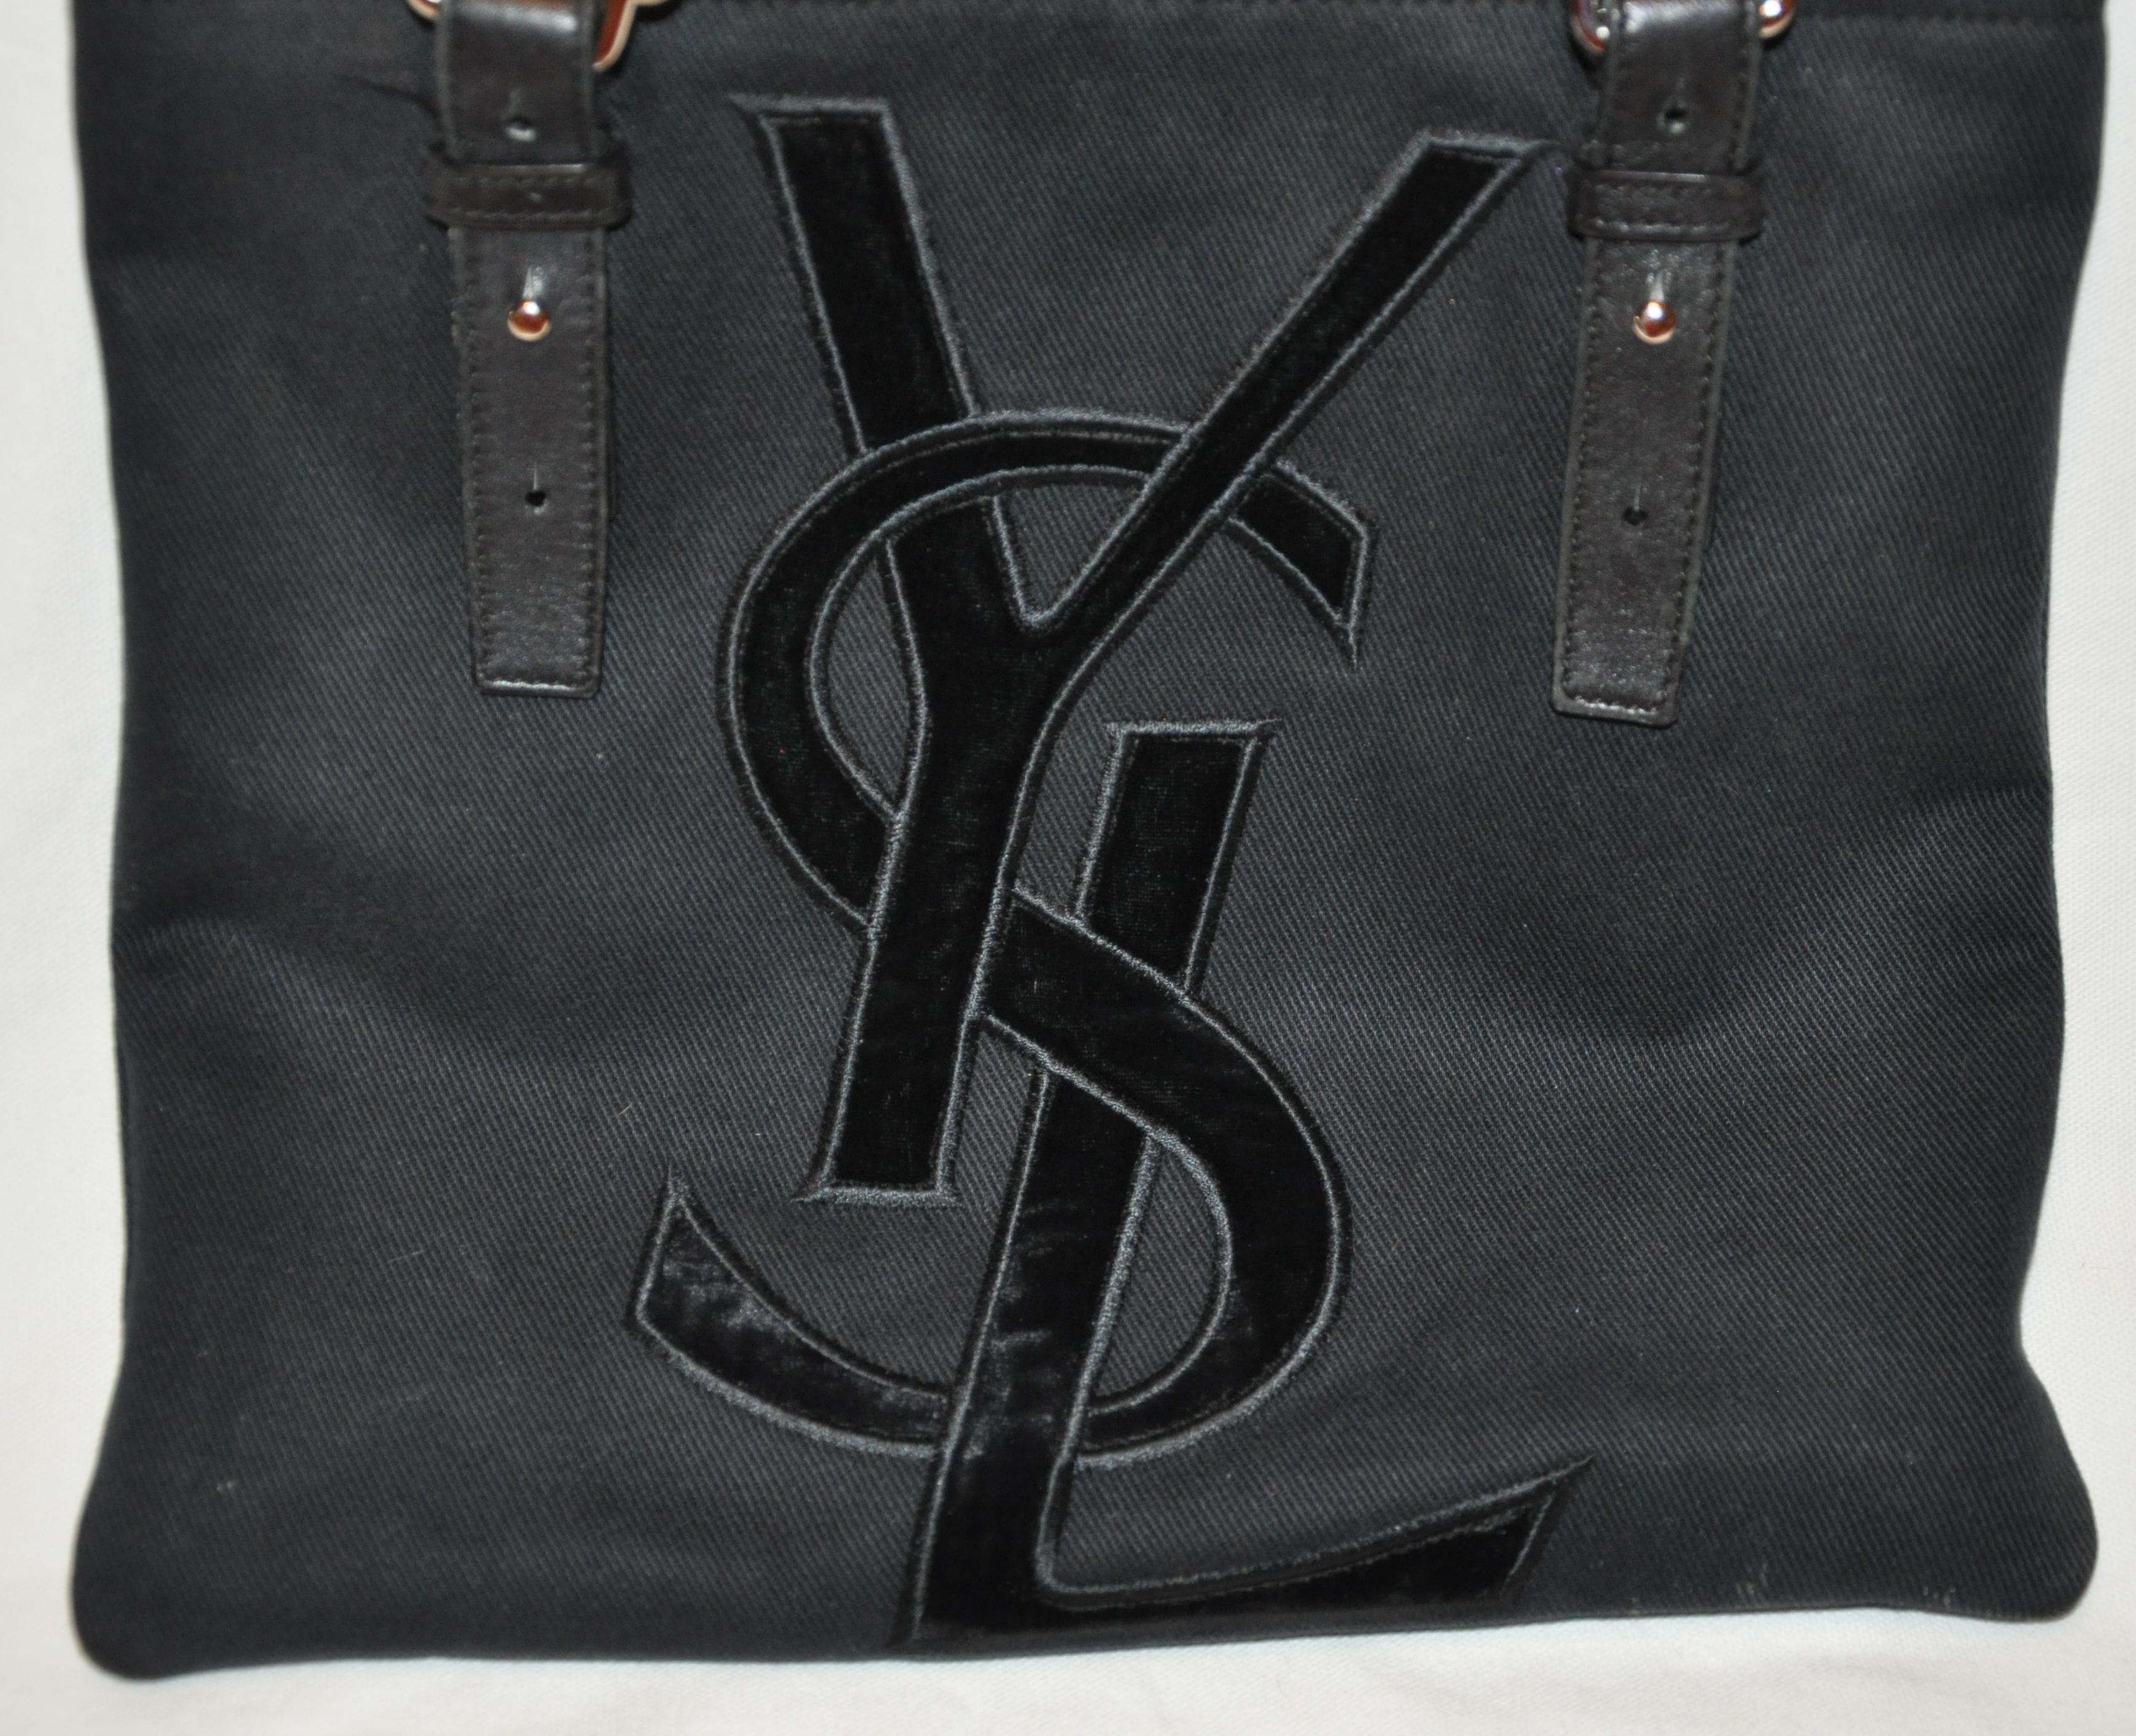        Yves Saint Laurent wunderbare Unterschrift Samt Monogramm vor verstellbarem Doppelgriff Tote Bag ist mit verstellbaren Griffen messen von 10 1/2 bis 13 1/2 Zoll detailliert. Die Griffe sind sowohl mit schwarzem Kalbsleder als auch mit